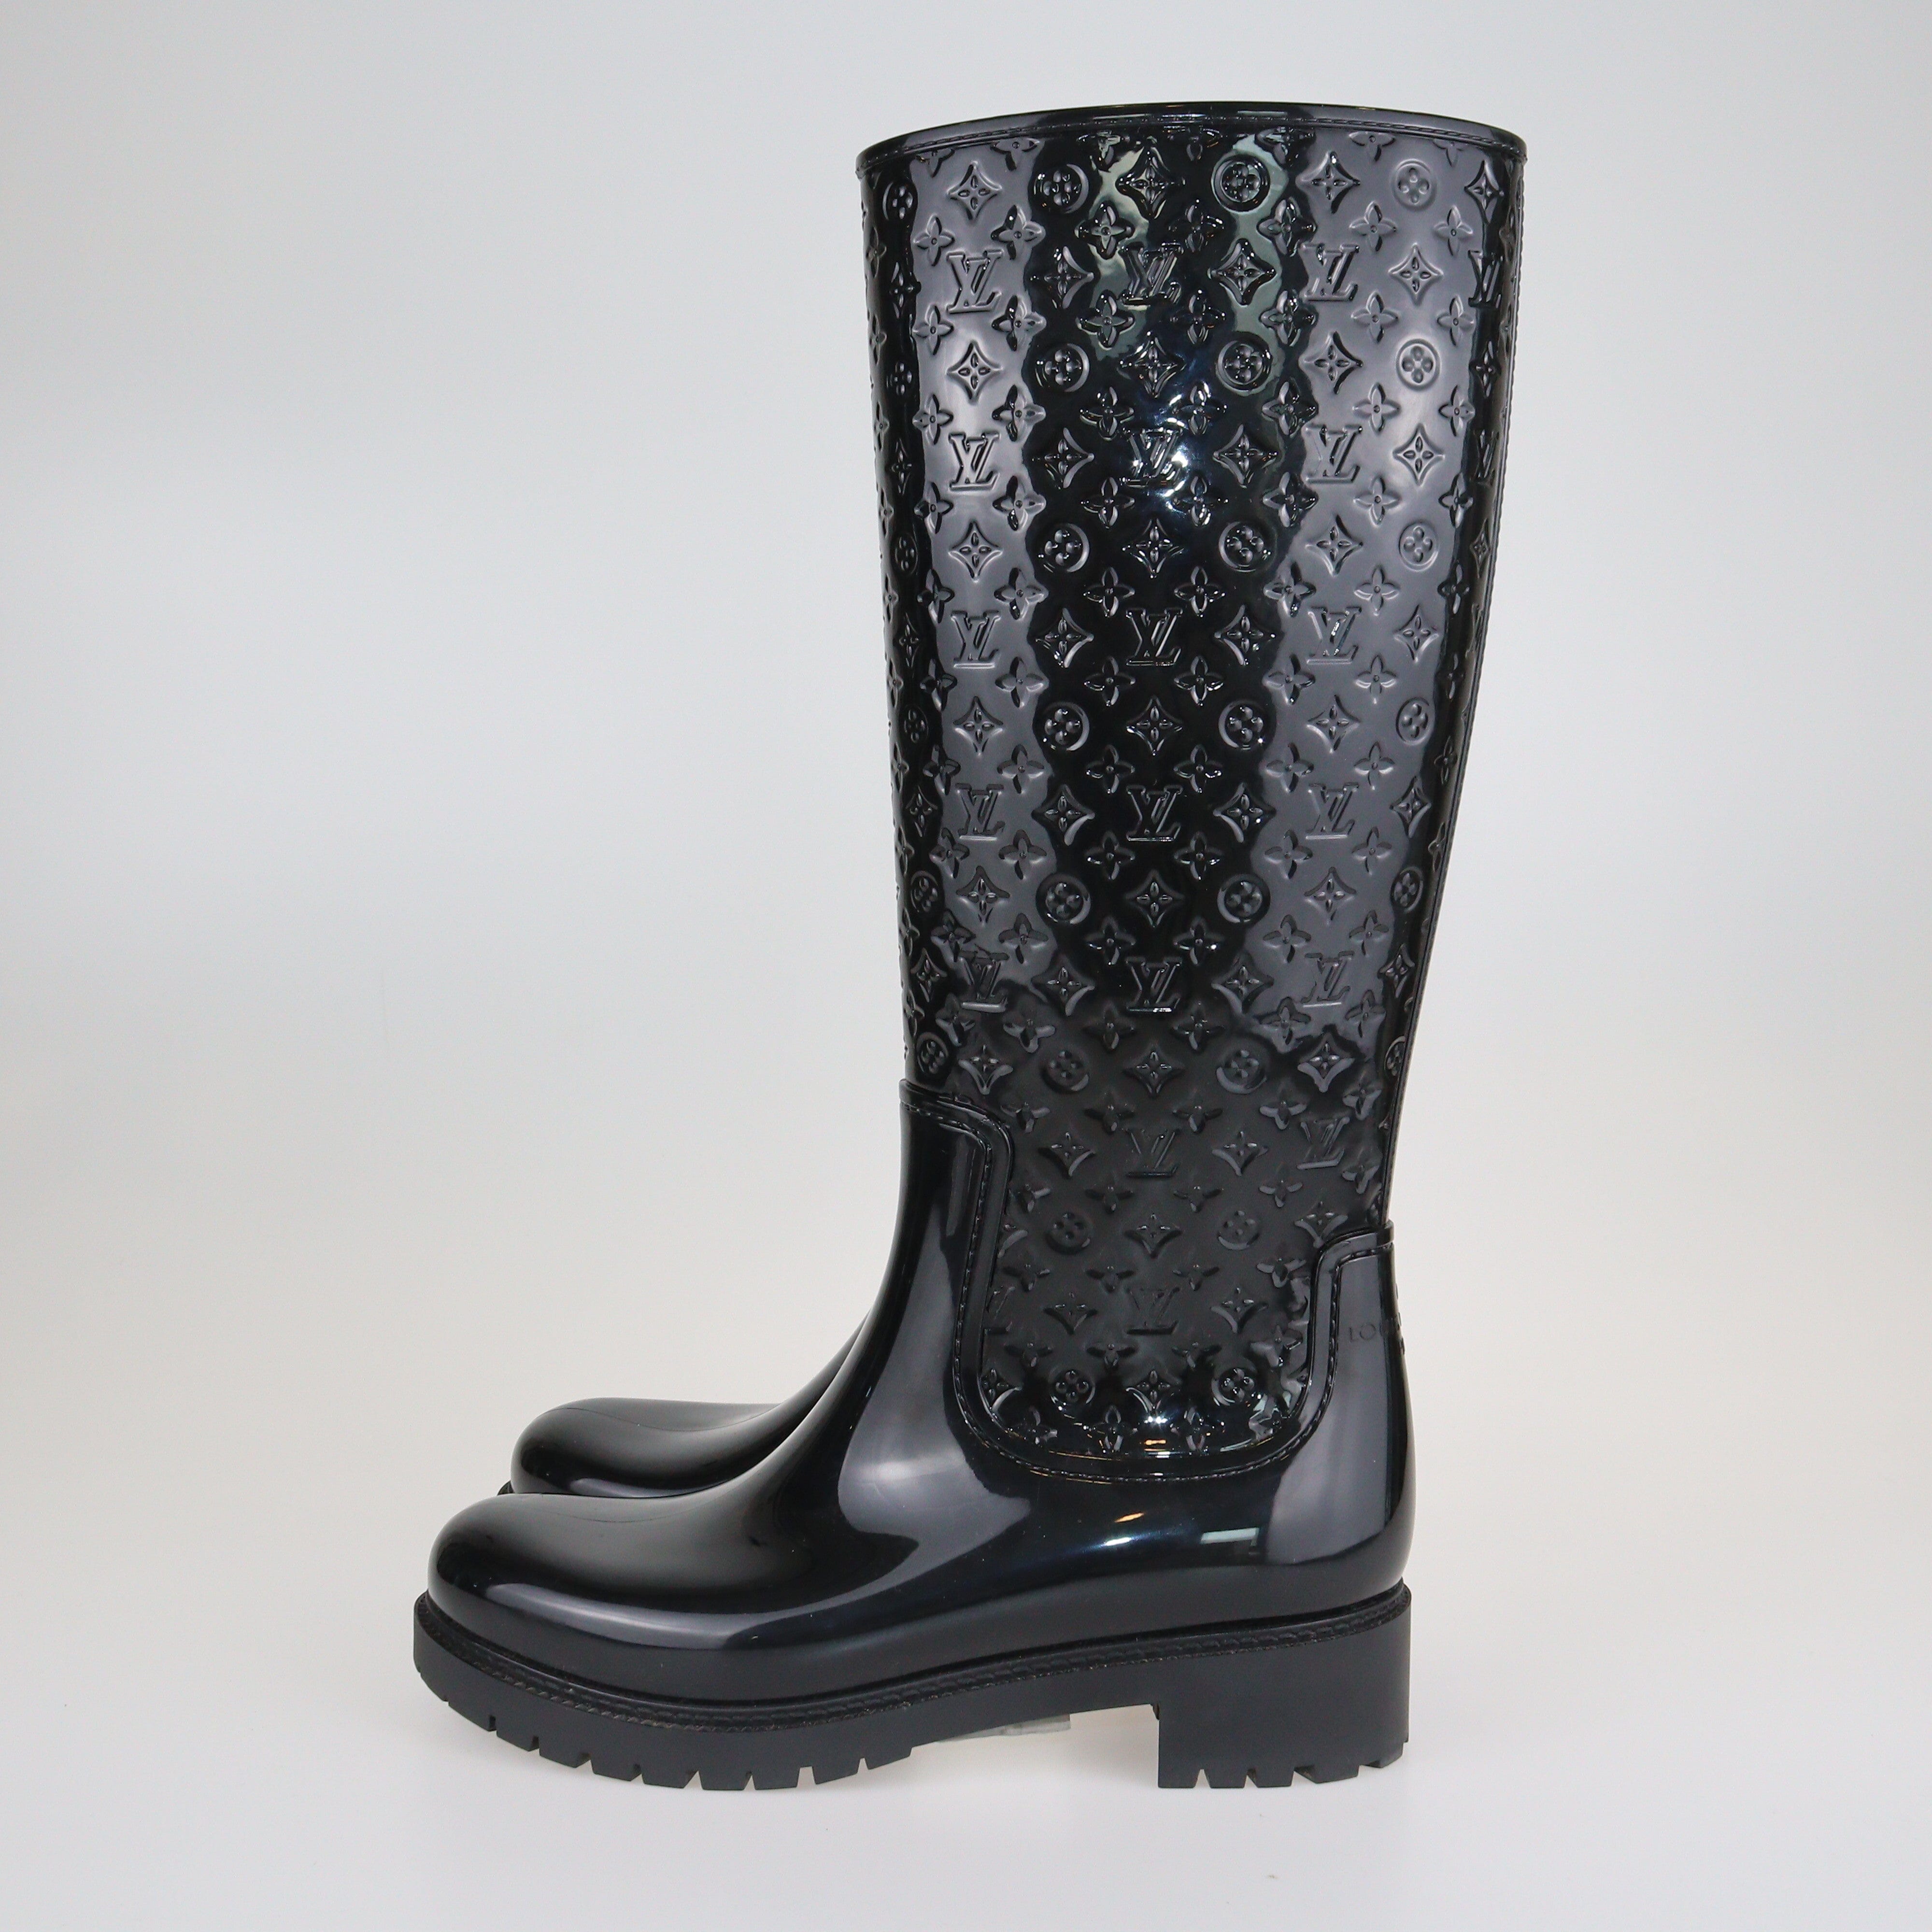 Black Splash Boots Shoes Louis Vuitton 